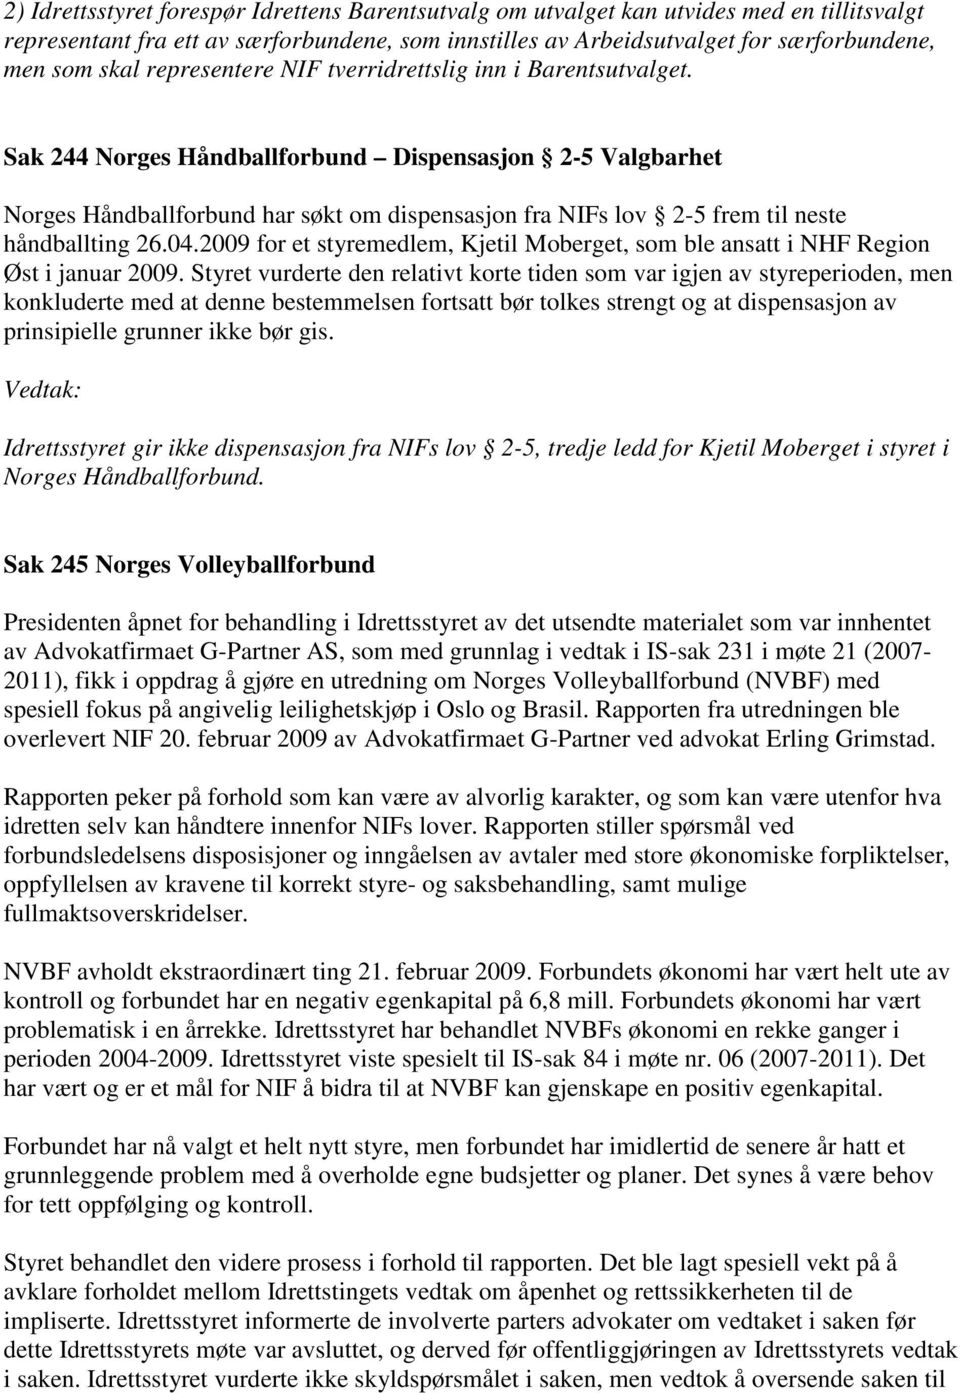 Sak 244 Norges Håndballforbund Dispensasjon 2-5 Valgbarhet Norges Håndballforbund har søkt om dispensasjon fra NIFs lov 2-5 frem til neste håndballting 26.04.